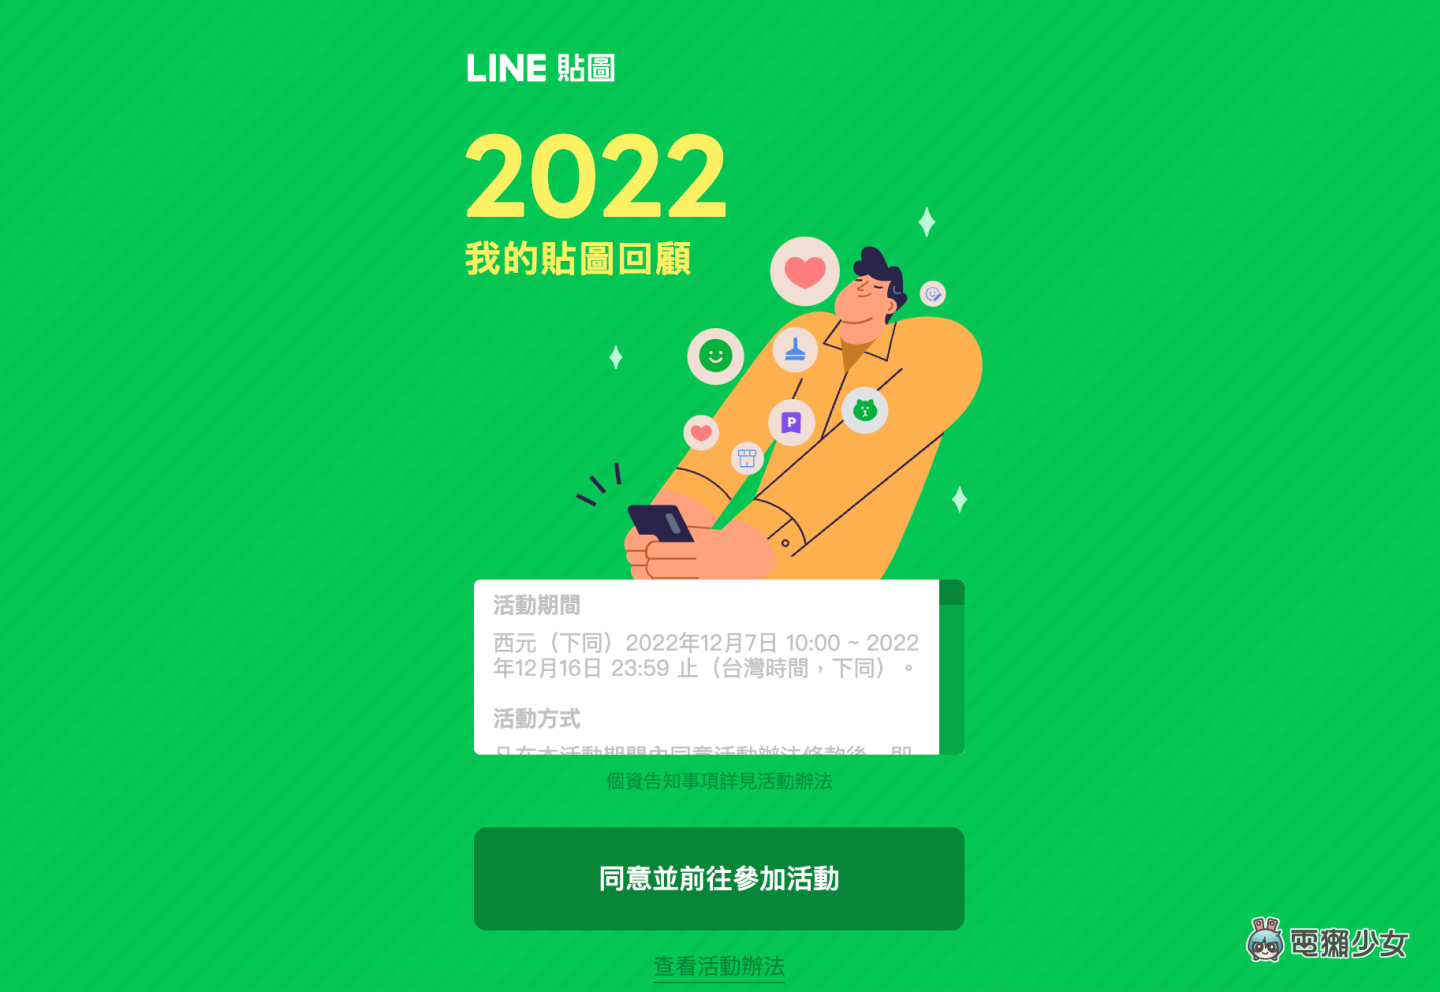 LINE 推出 2022 年度貼圖回顧！快來看你今年愛用貼圖 Top 3 和總共傳了幾張貼圖